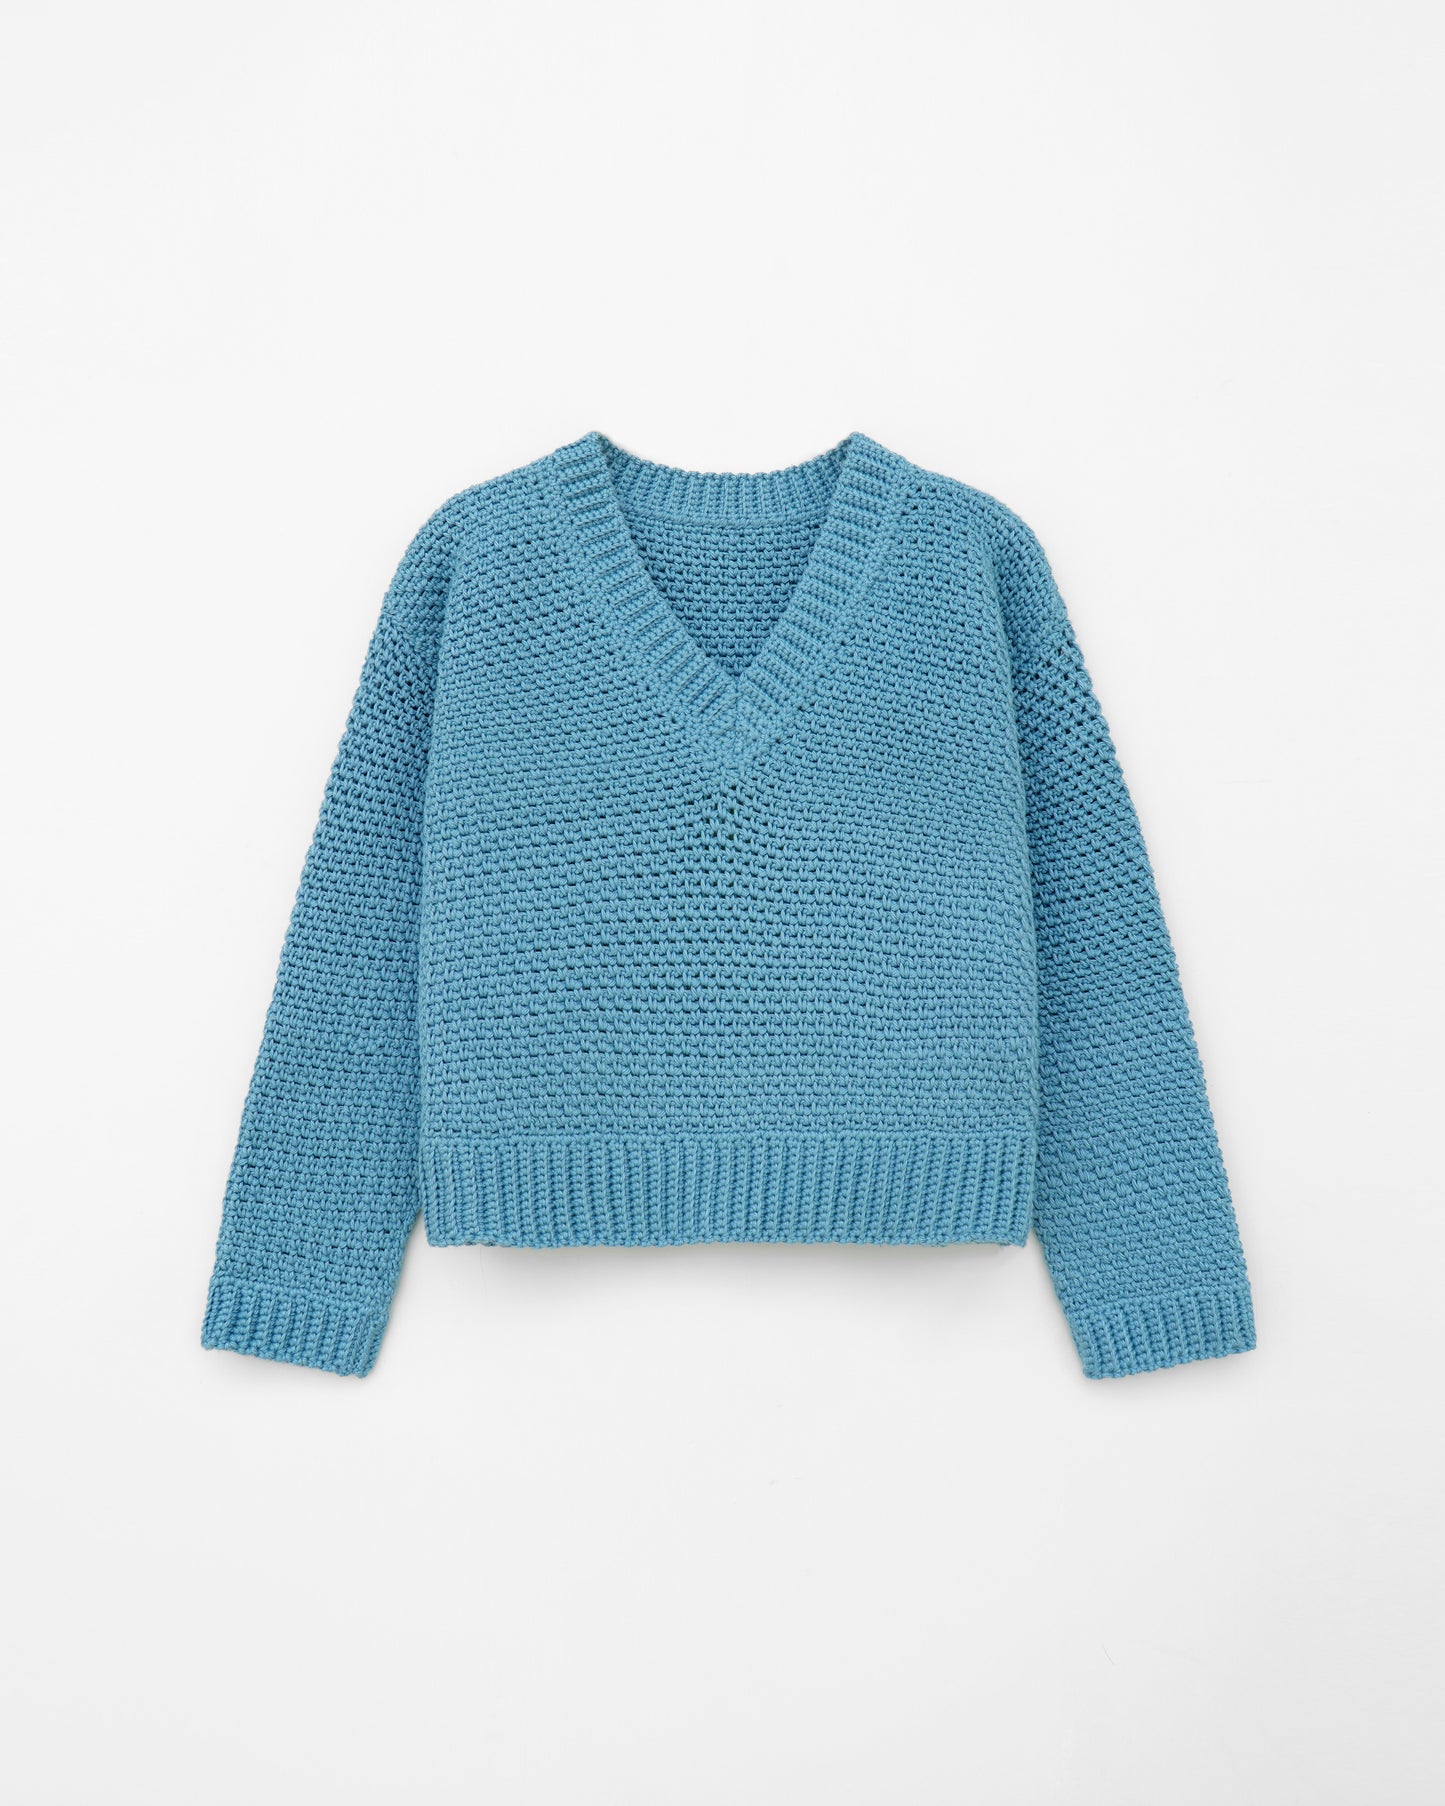 Kids' Sweater No.8 | Easy crochet pattern